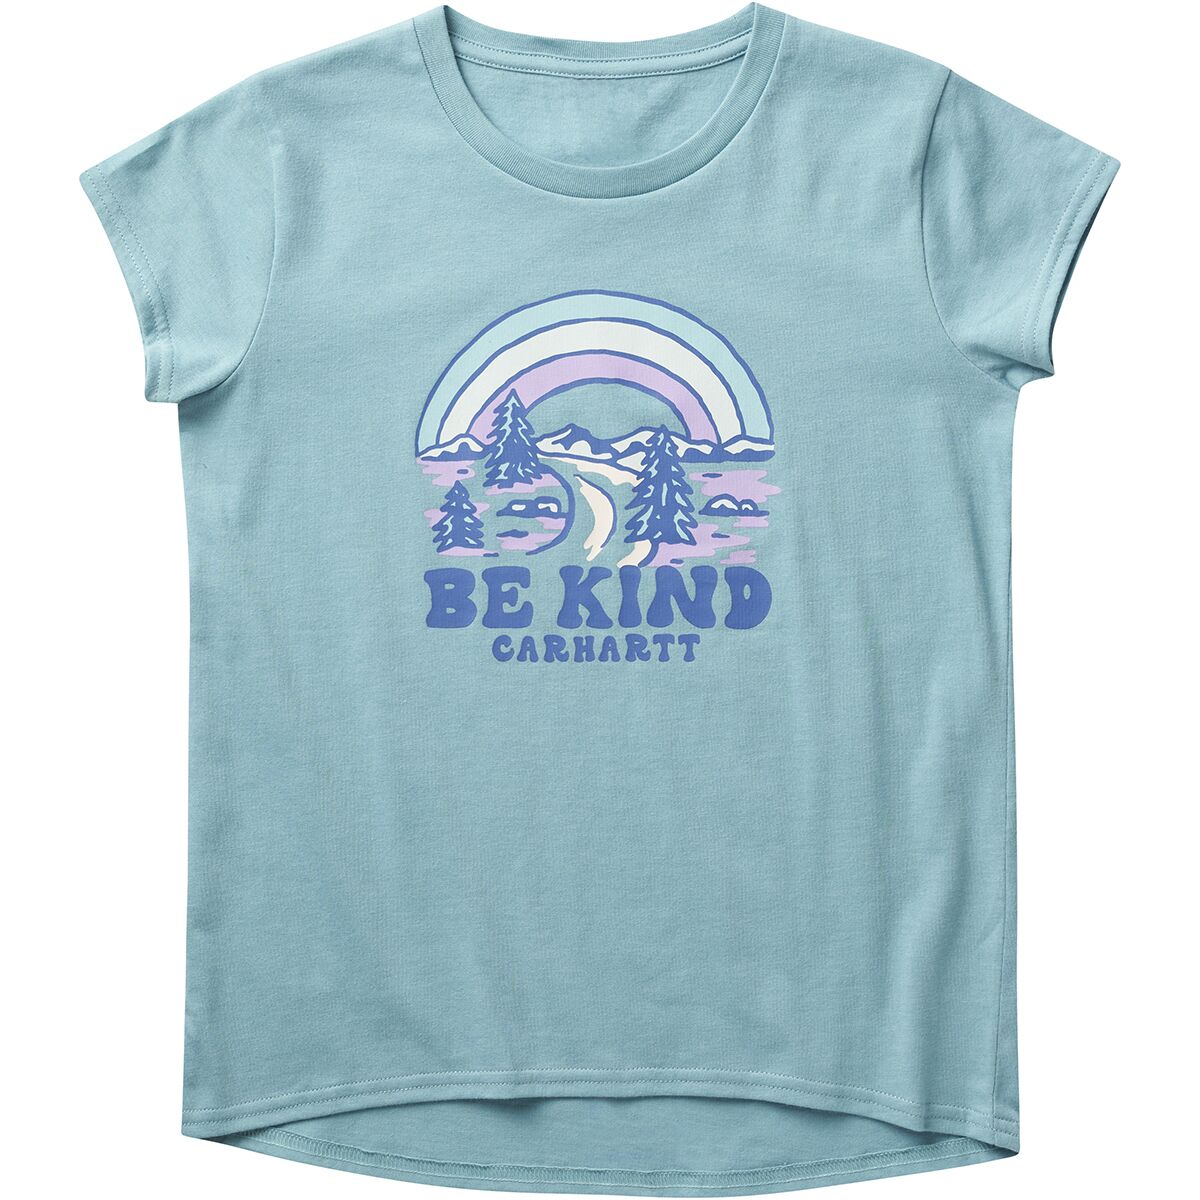 Carhartt Be Kind Short-Sleeve Graphic T-Shirt - Little Girls'